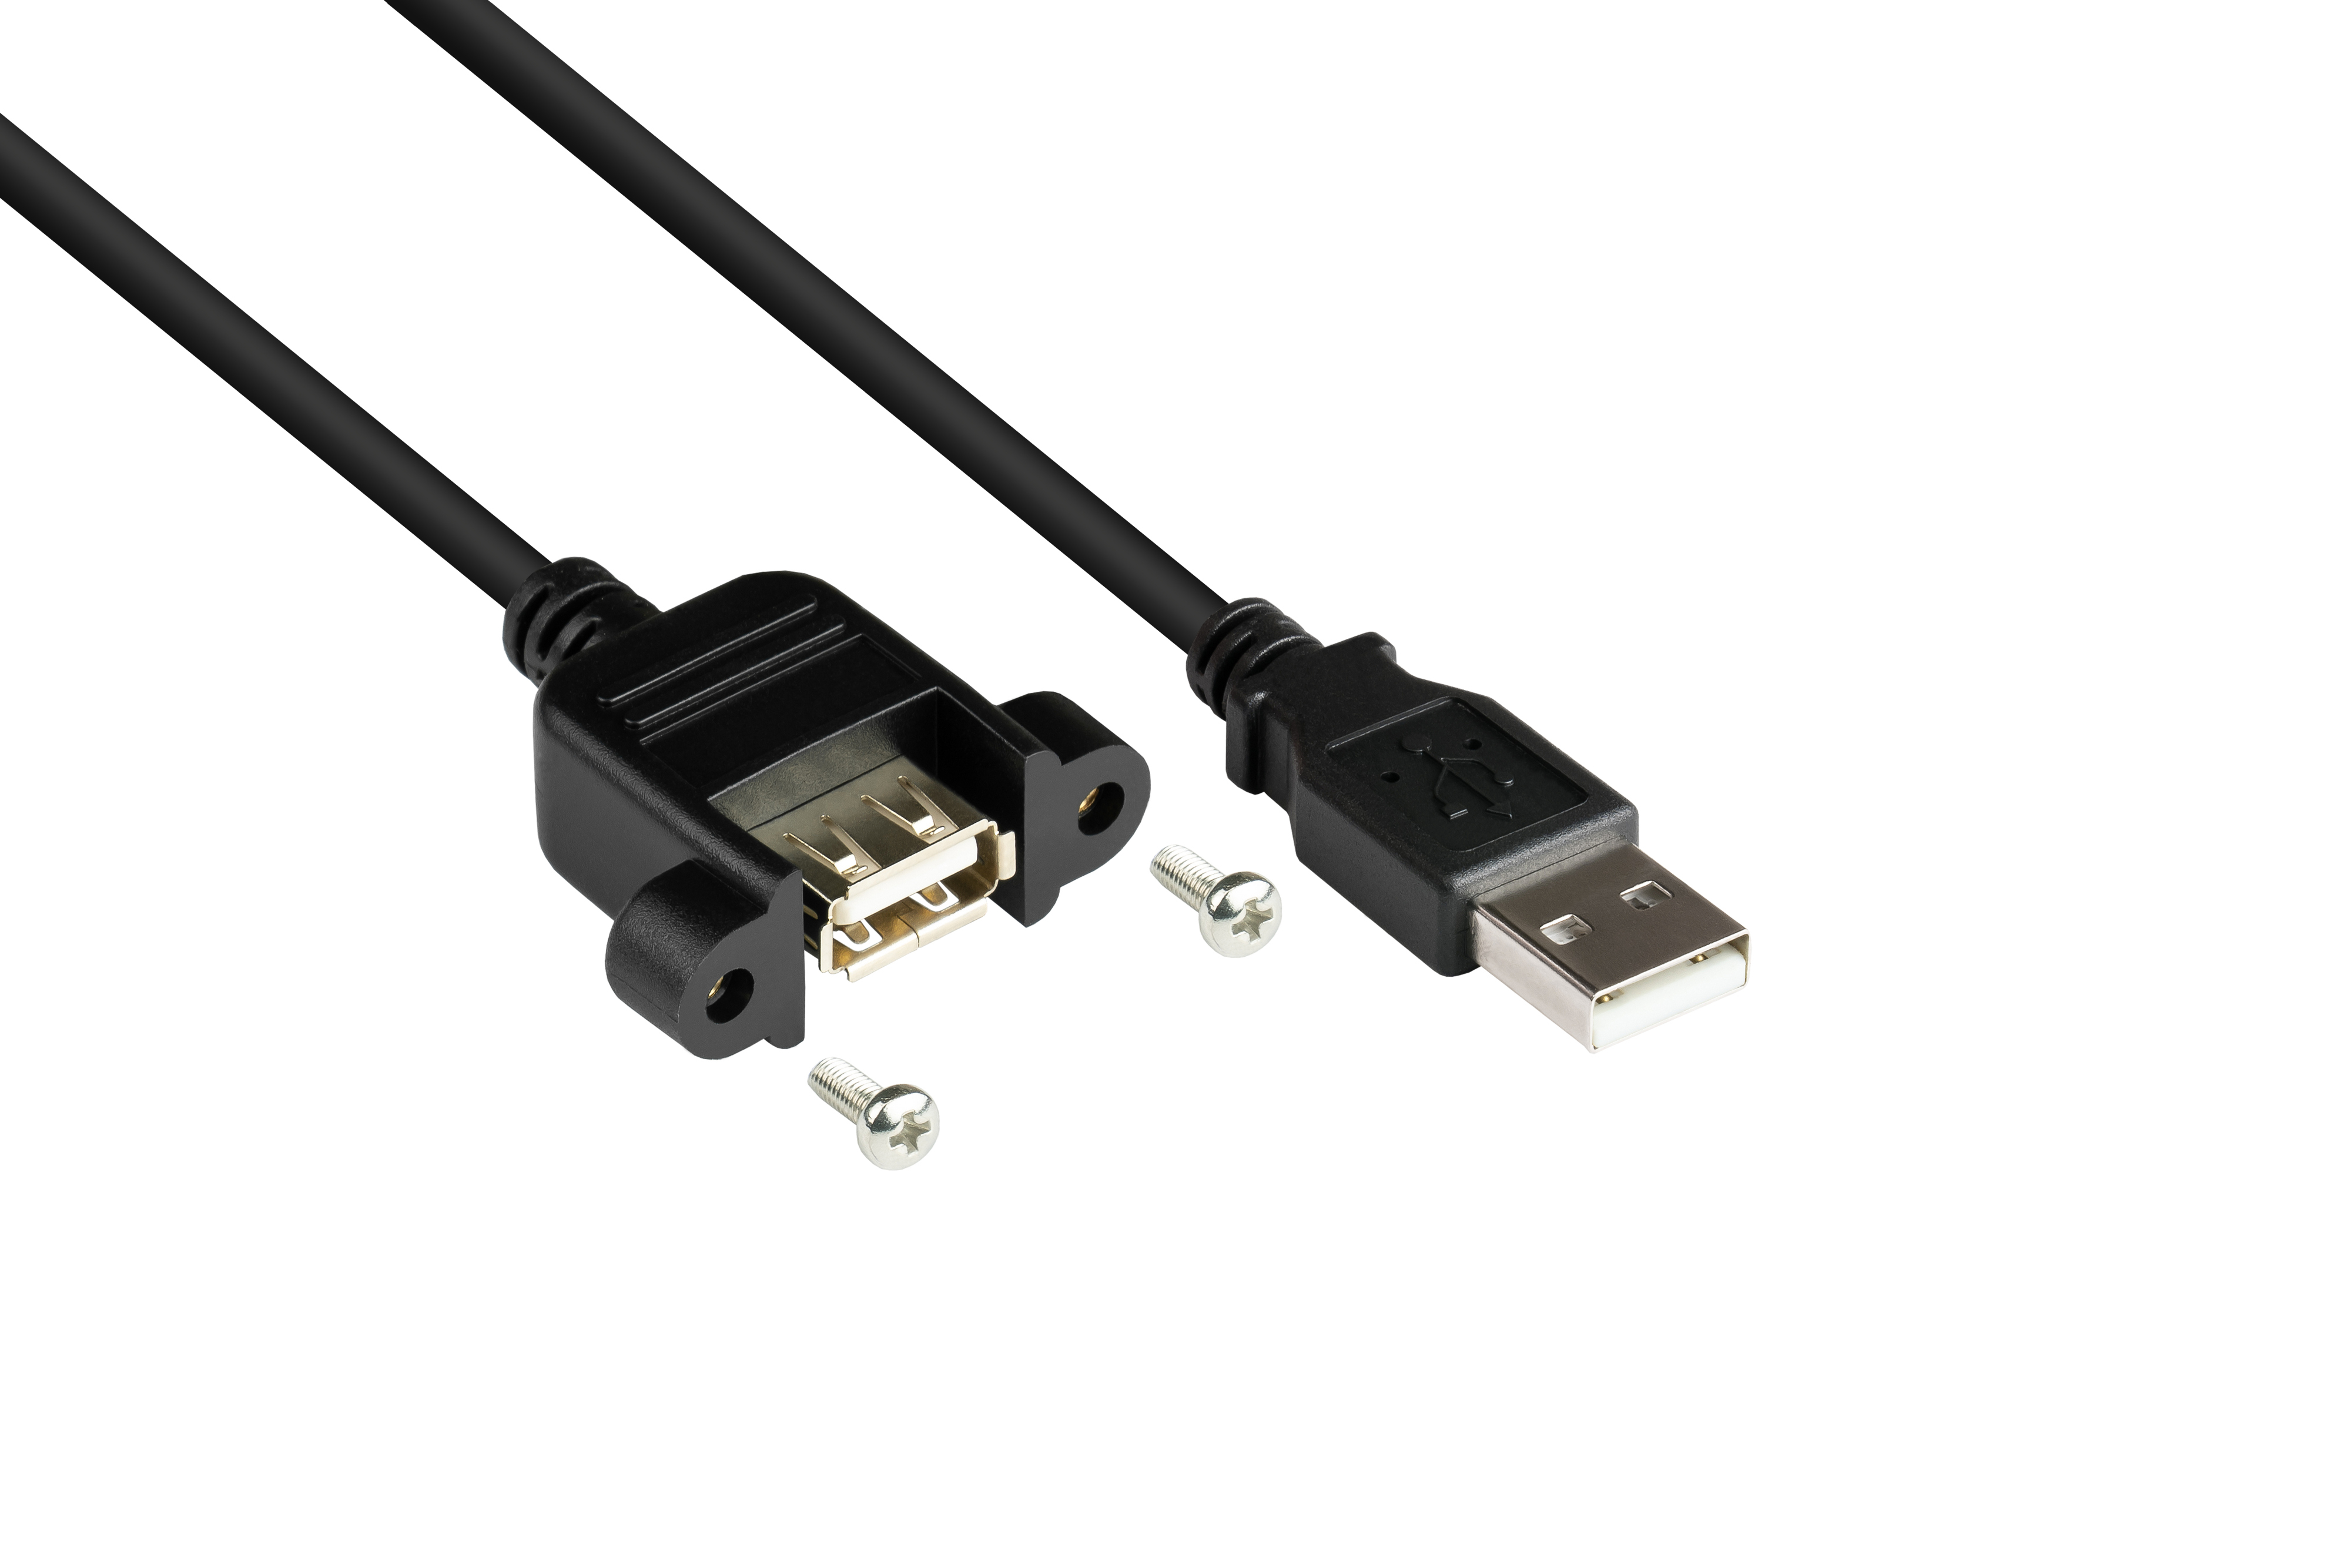 CU, USB 2.0 A, CONNECTIONS schwarz GOOD A Stecker Einbaubuchse Verlängerungskabel an